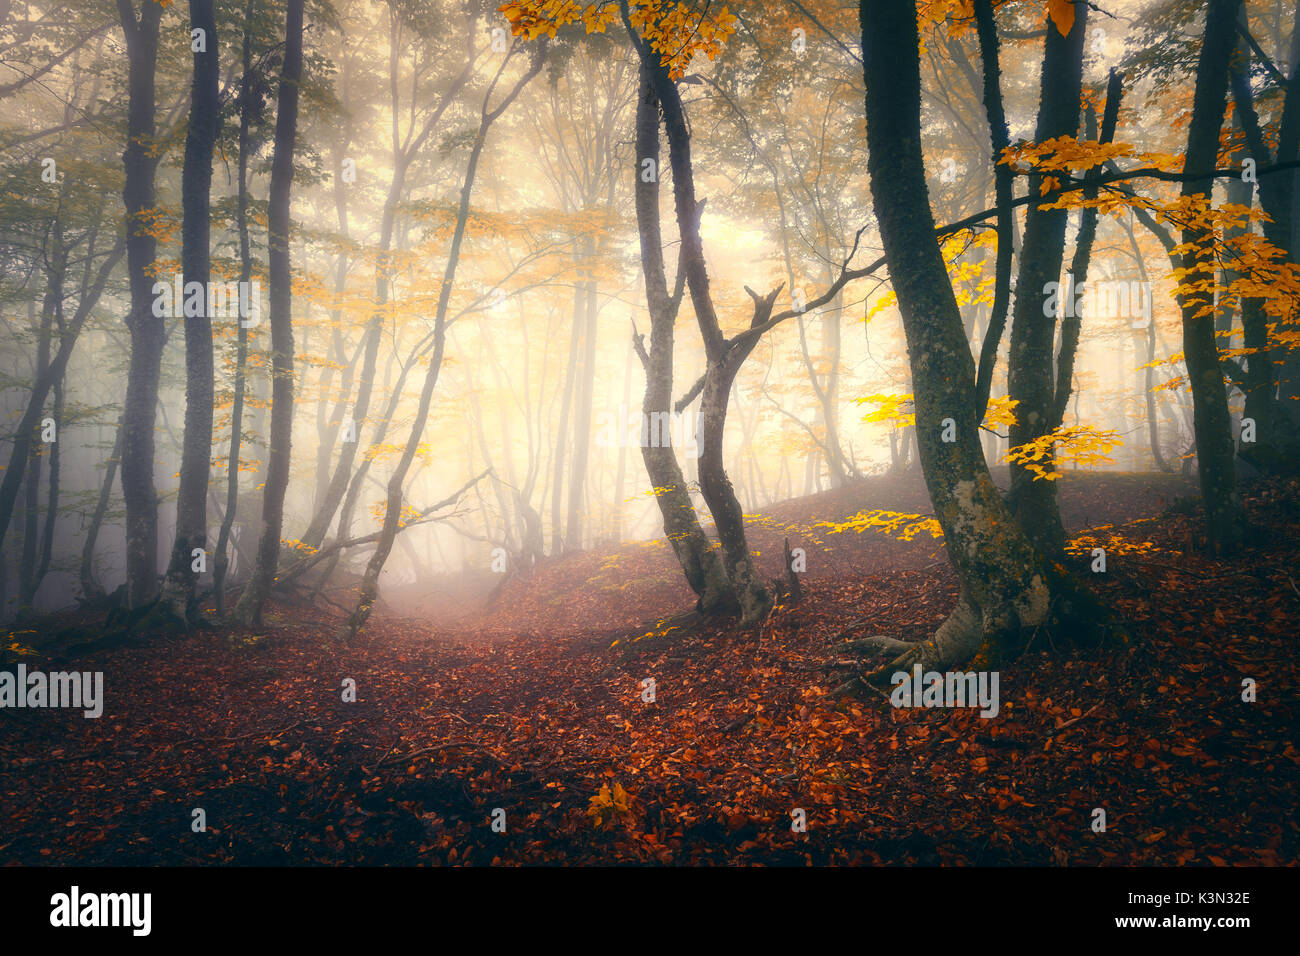 Herbst Wald im Nebel. Herbst Wald. Die verzauberte Herbst Wald im Nebel am Abend. Alter Baum. Landschaft mit Bäumen, bunte gelbe und rote Laub und f Stockfoto